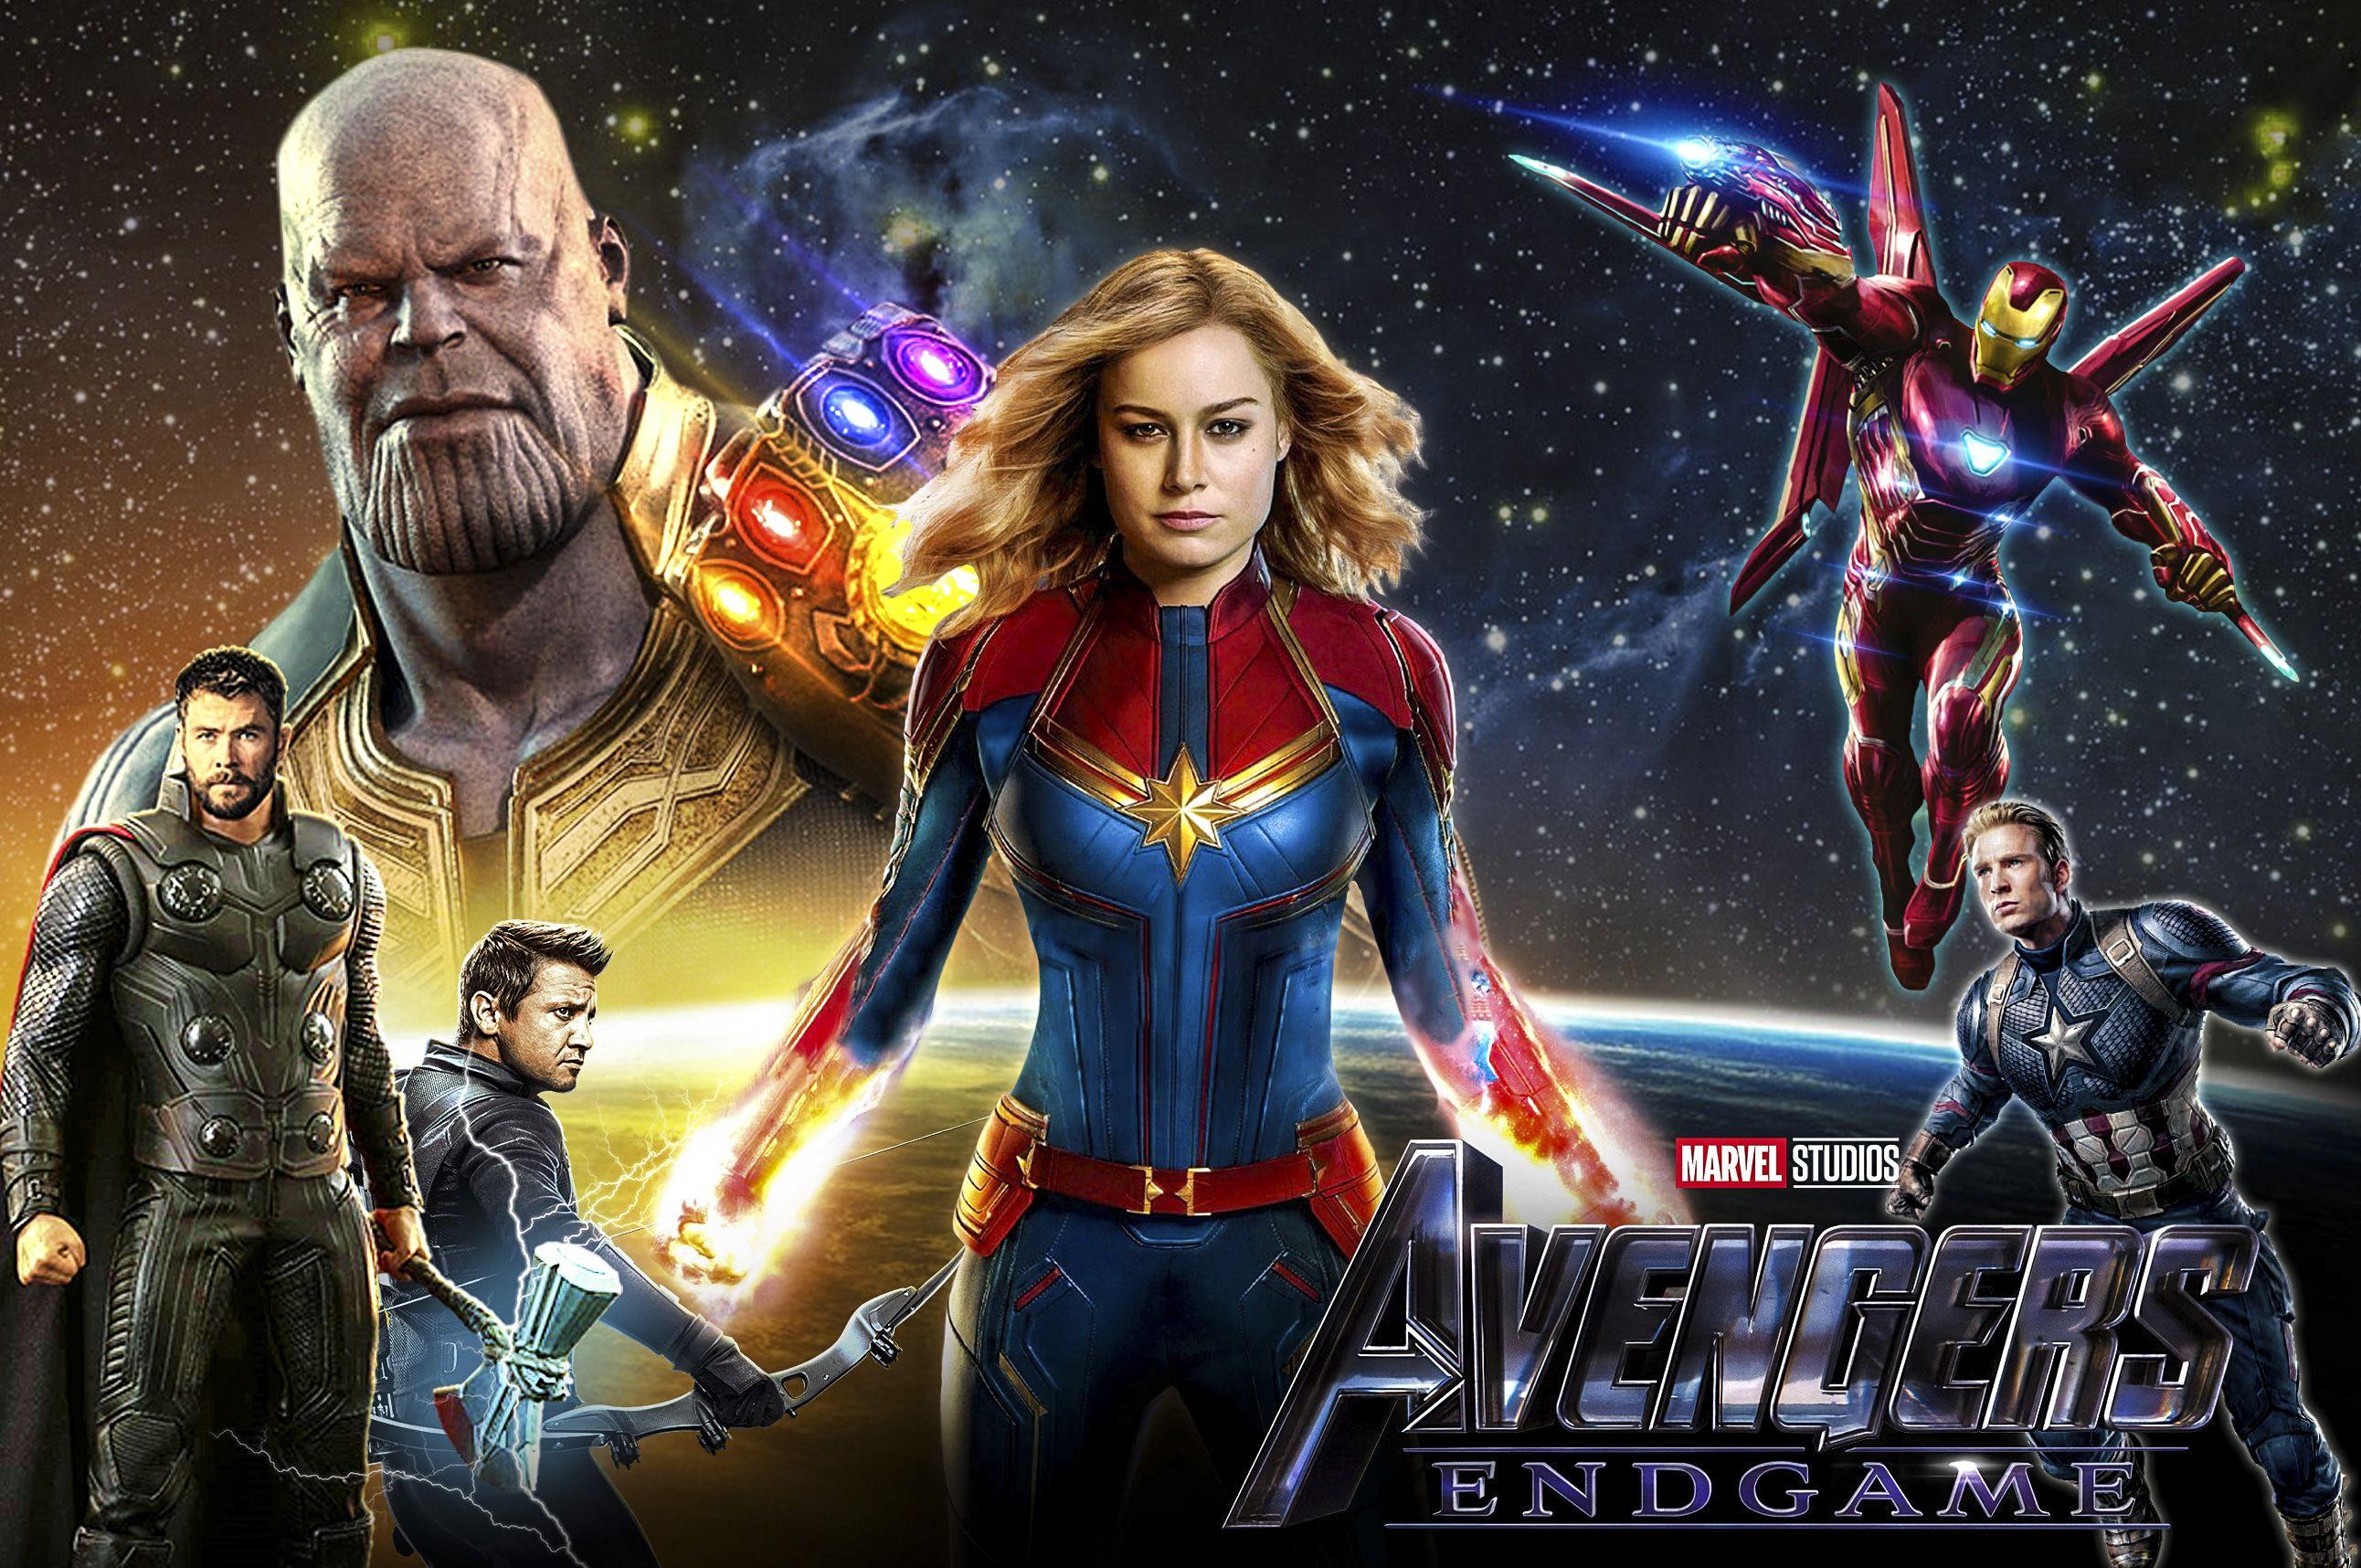 Wallpaper 4k Avengers End Game Artworks 4k 2019 movies wallpaper